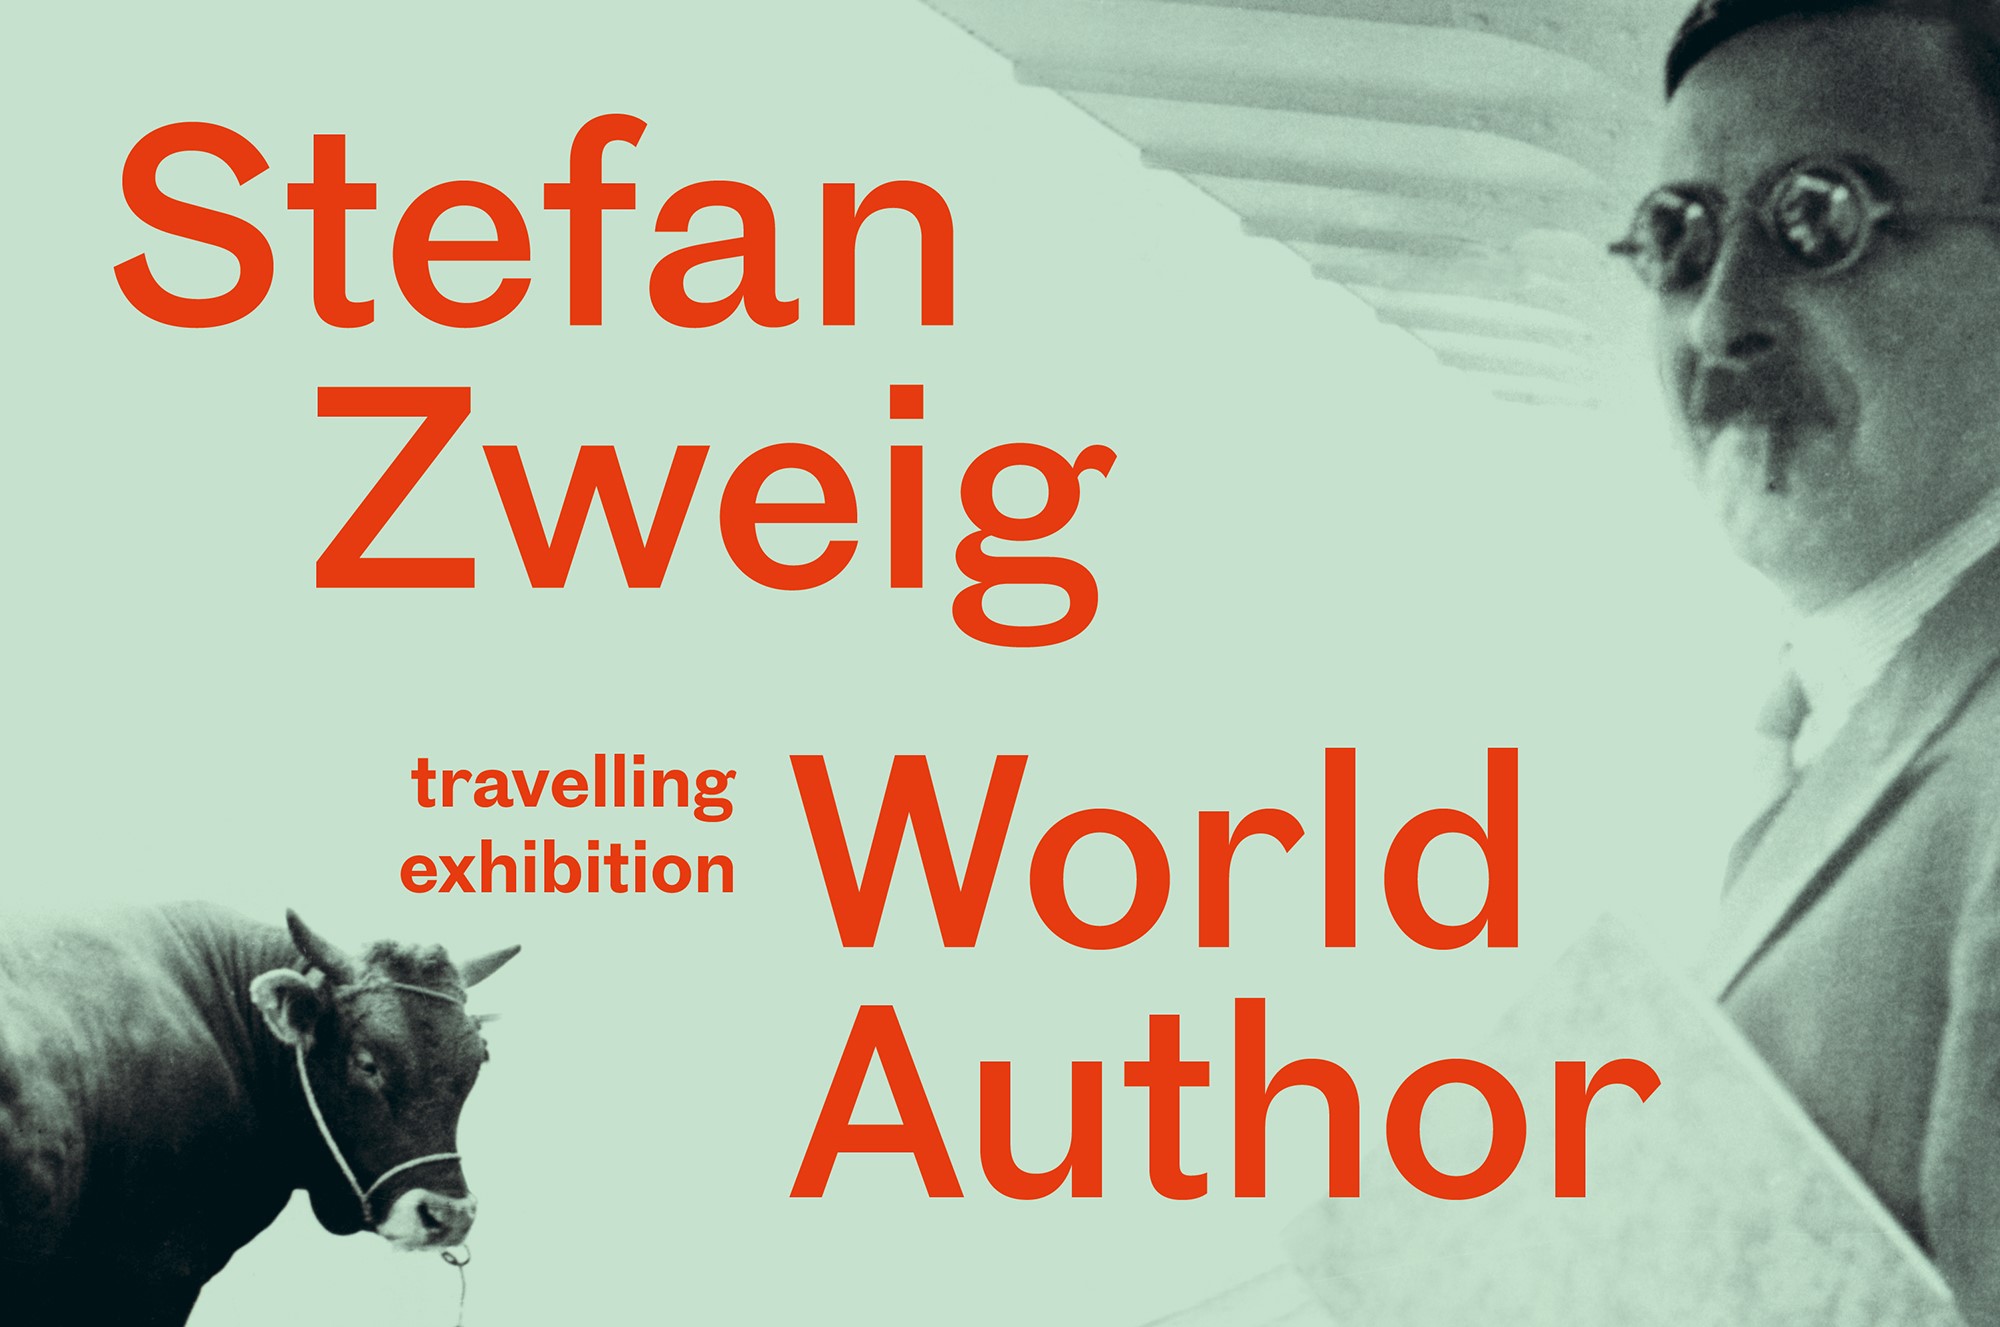 Grünliches Bild von Mann mit Schnauzer und einem Stier, rote Schrift: "Stefan Zweig. World Author. Travelling exhibition"